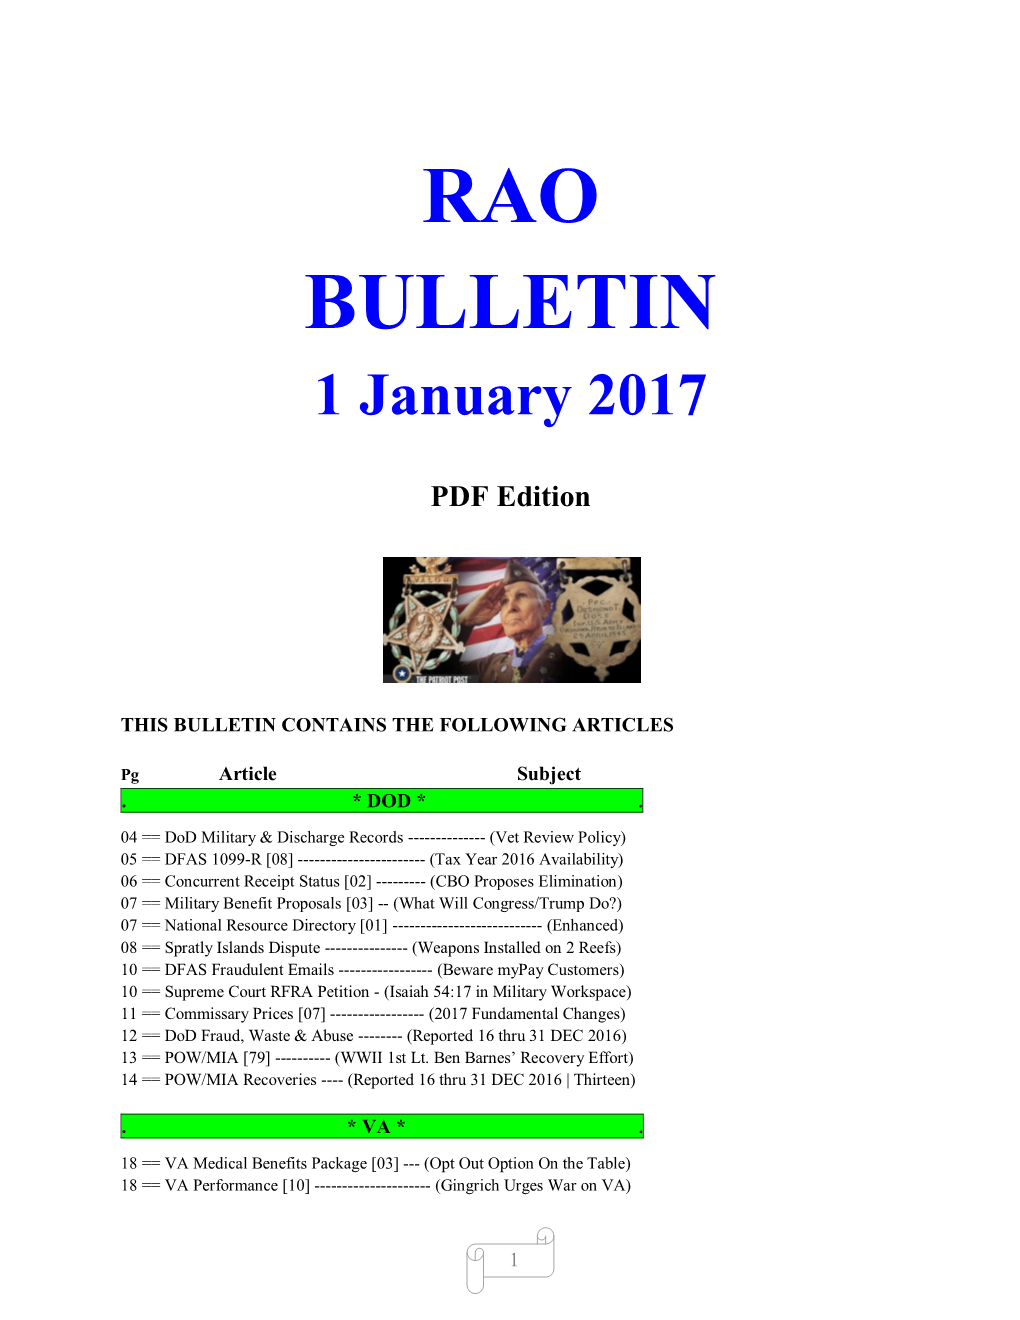 Bulletin 170101 (PDF Edition)